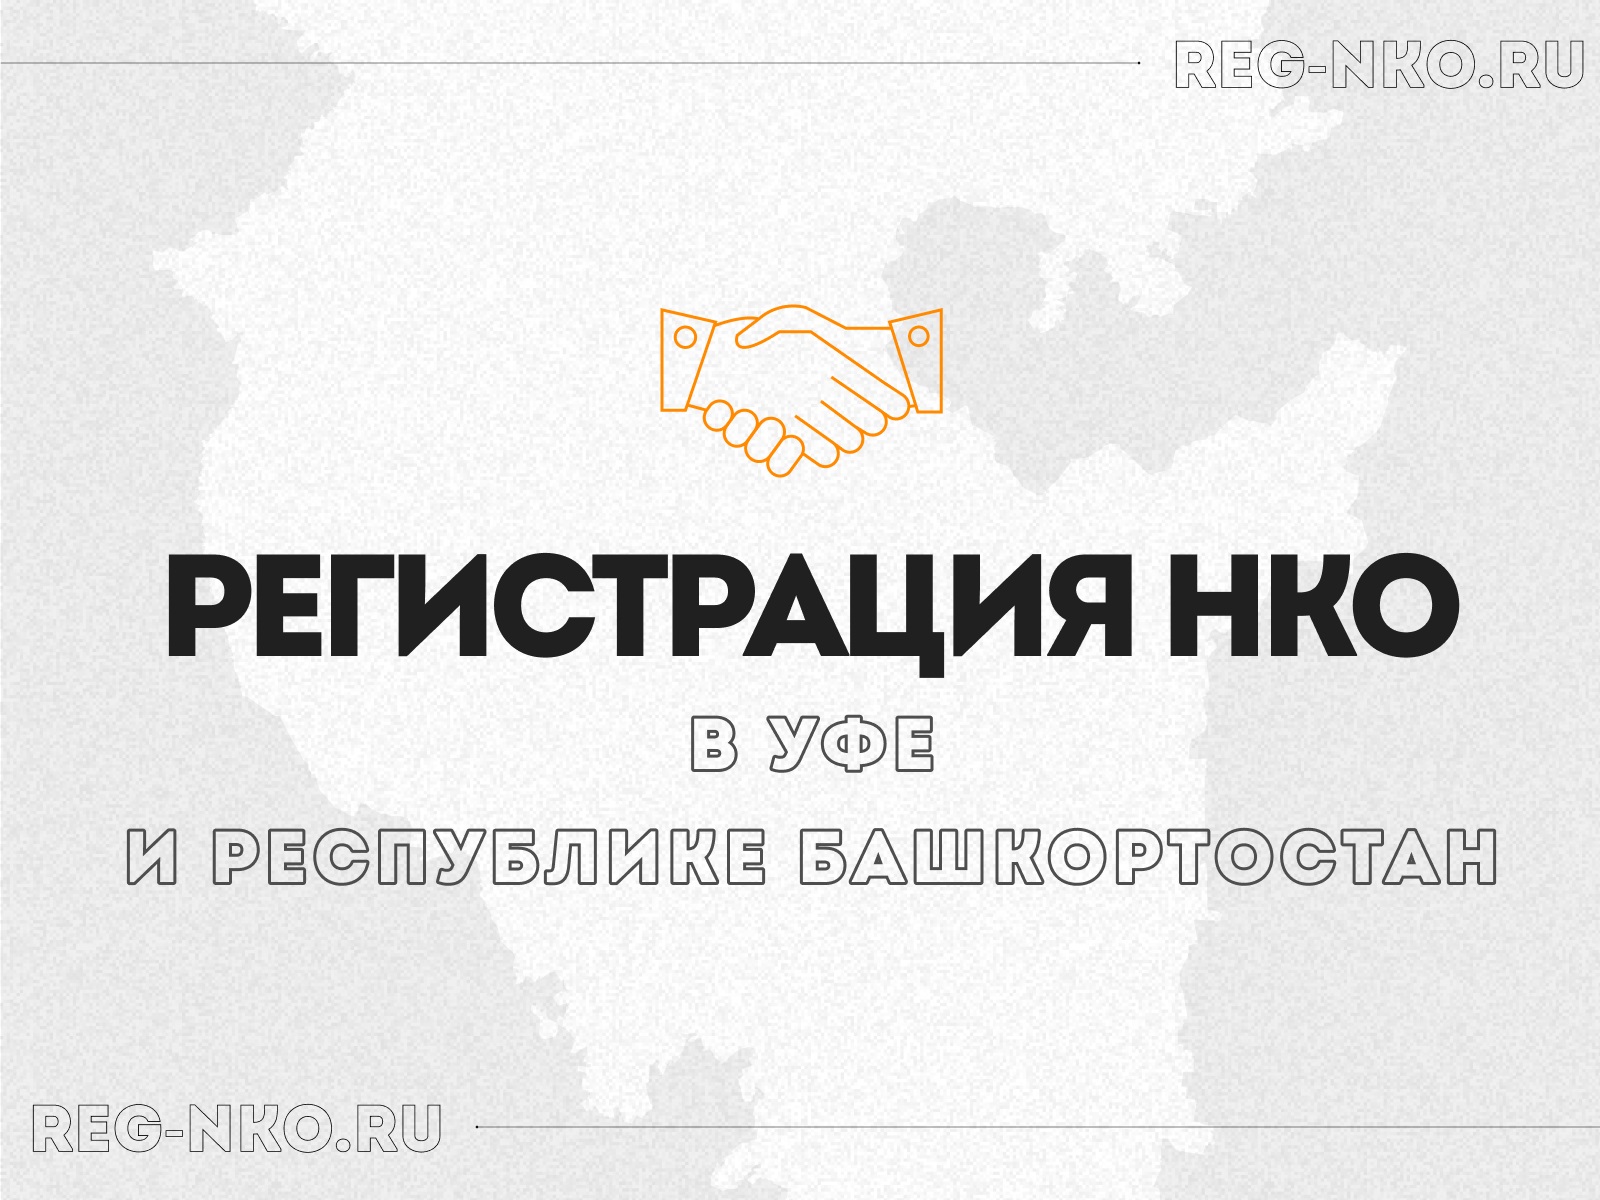 Регистрация НКО в Уфе и республике Башкортостан